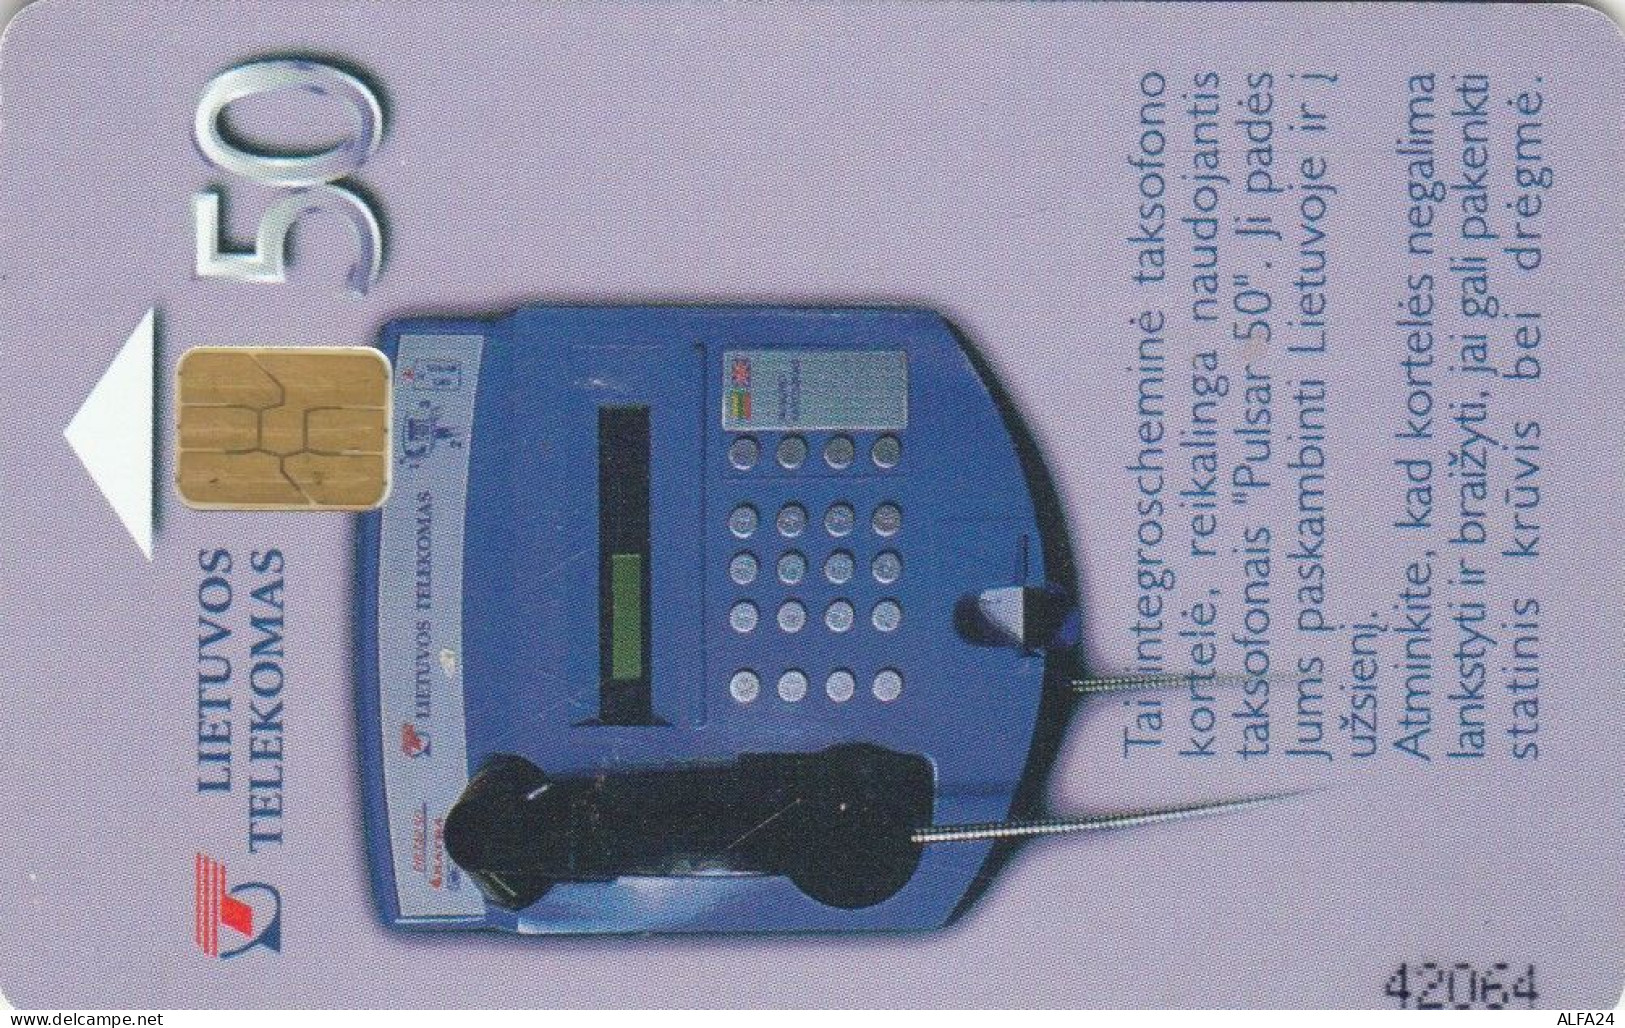 PHONE CARD LITUANIA (E89.20.6 - Lituania